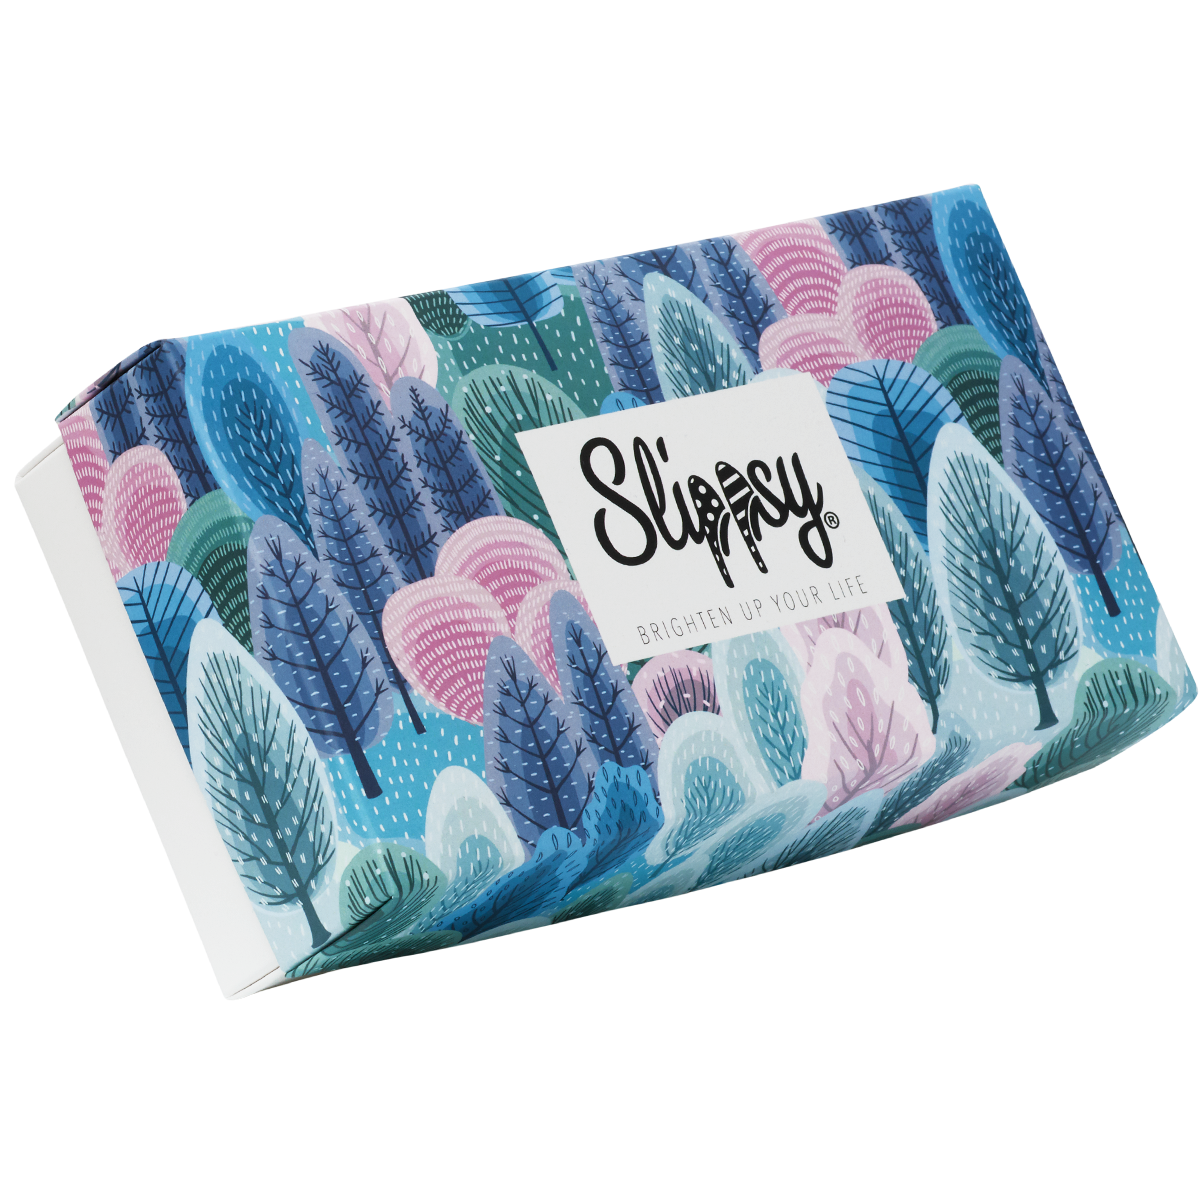 E-shop Slippsy Forest box set